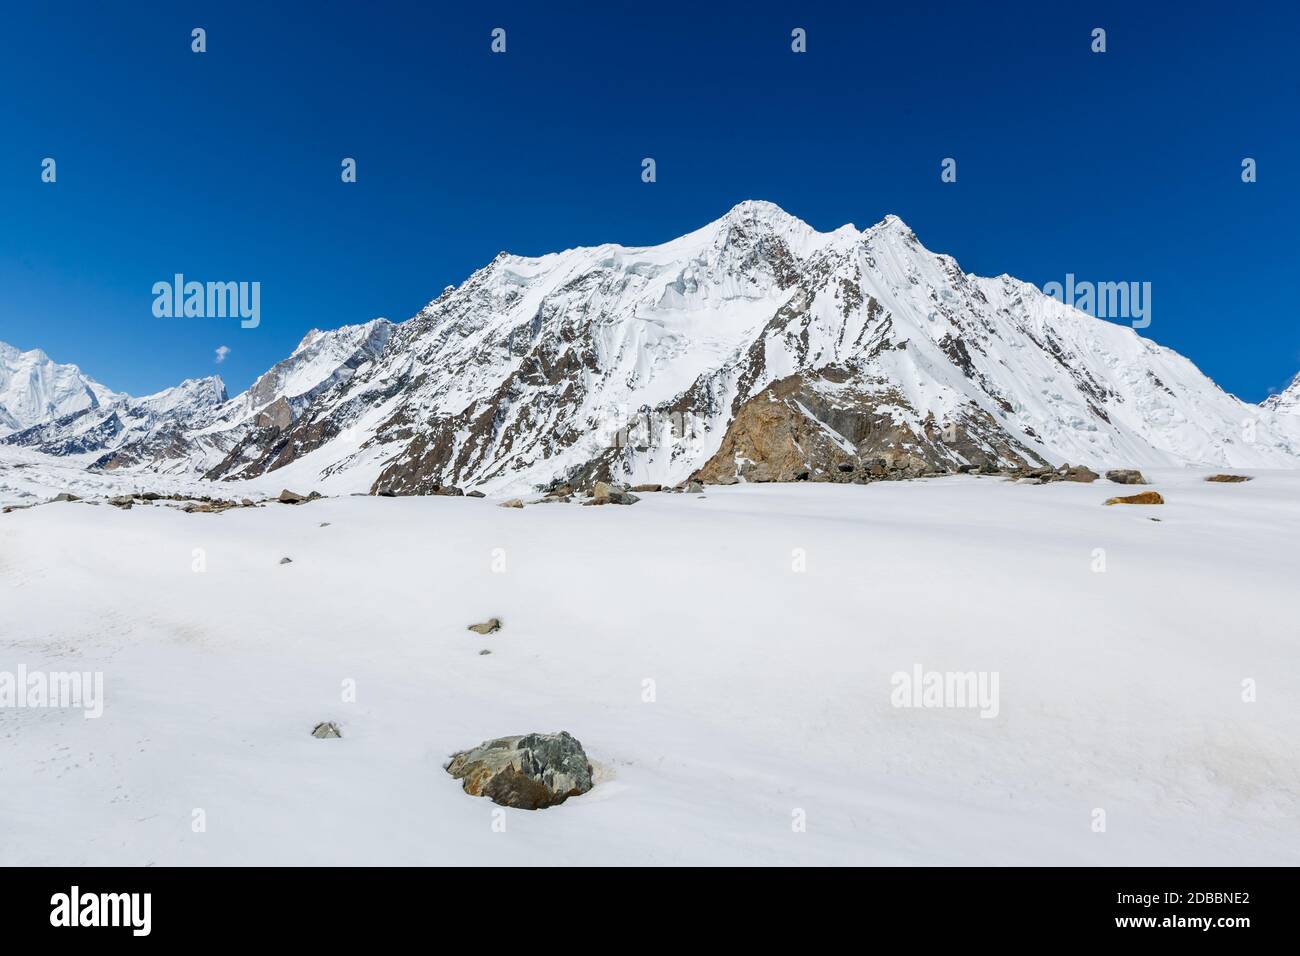 K2 mountain peak, second highest mountain in the world, K2 trek, Pakistan, Asia Stock Photo